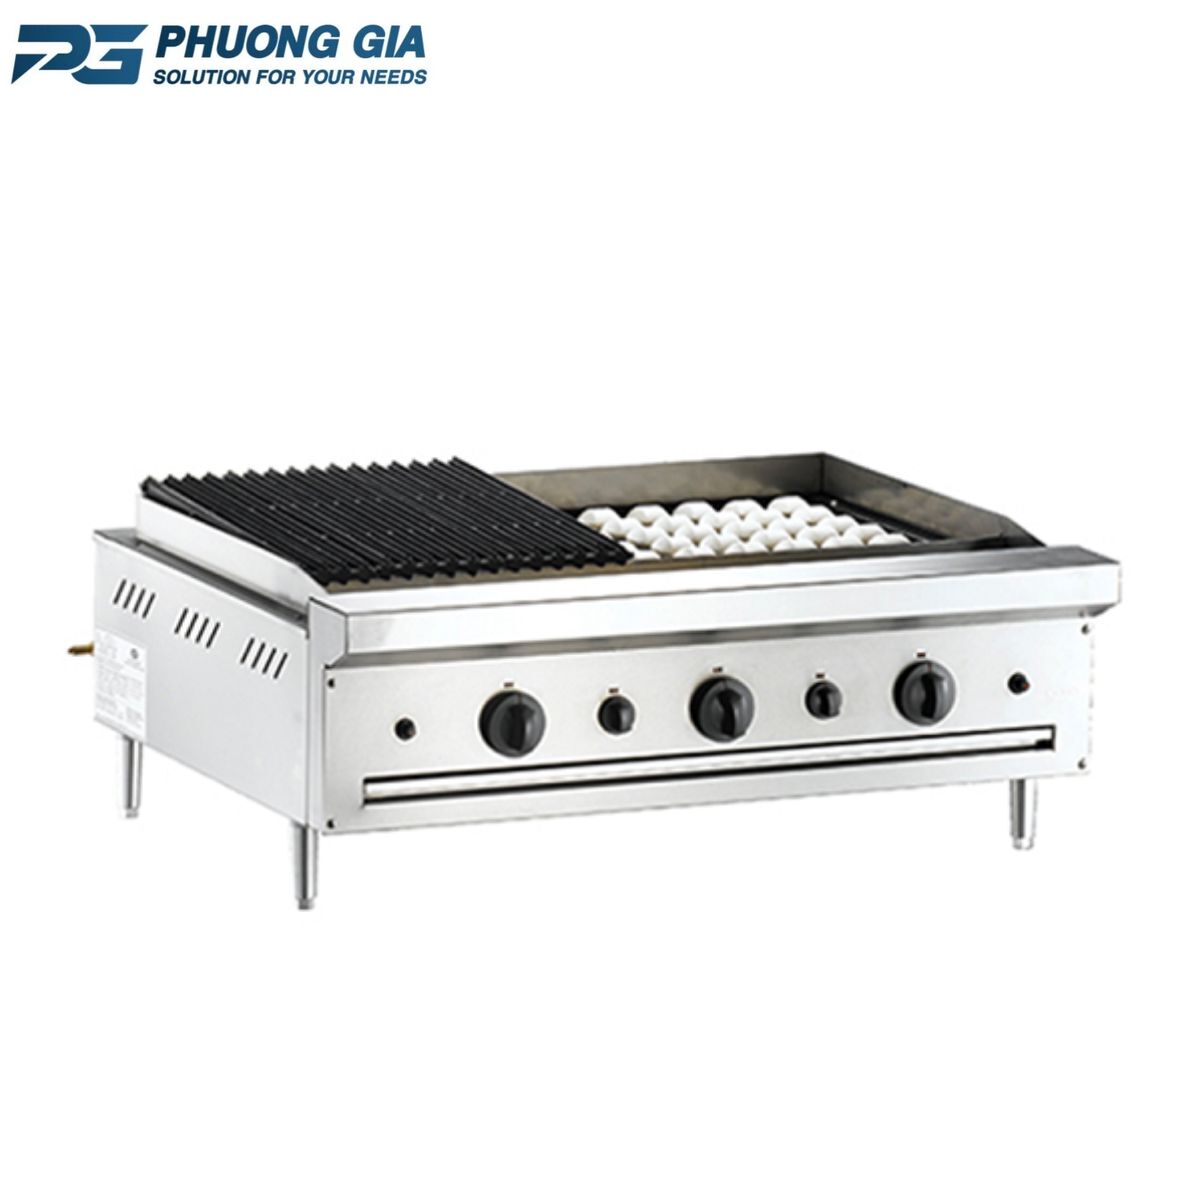 Bếp nướng công nghiệp bằng điện là một thiết bị nấu ăn chuyên dụng